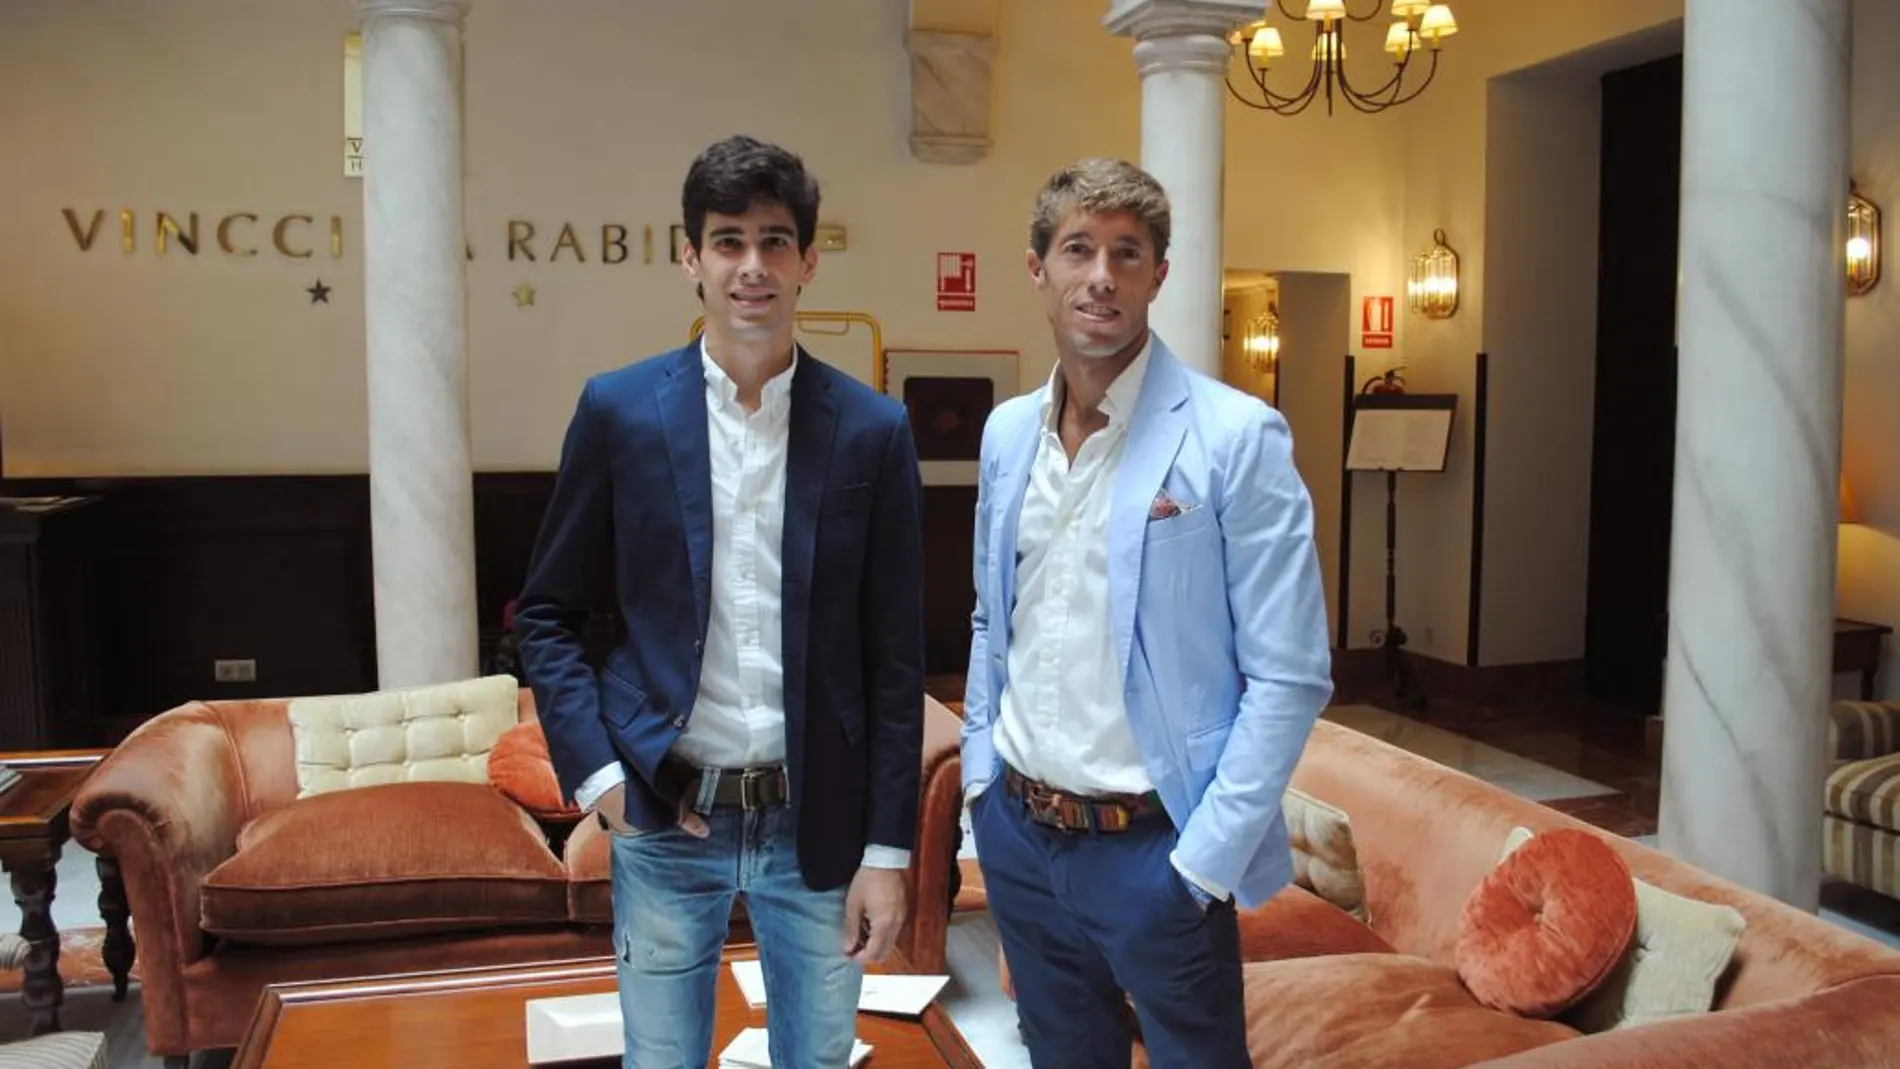 López Simón y Escribano, esta mañana, en el Hotel Vincci La Rábida de Sevilla